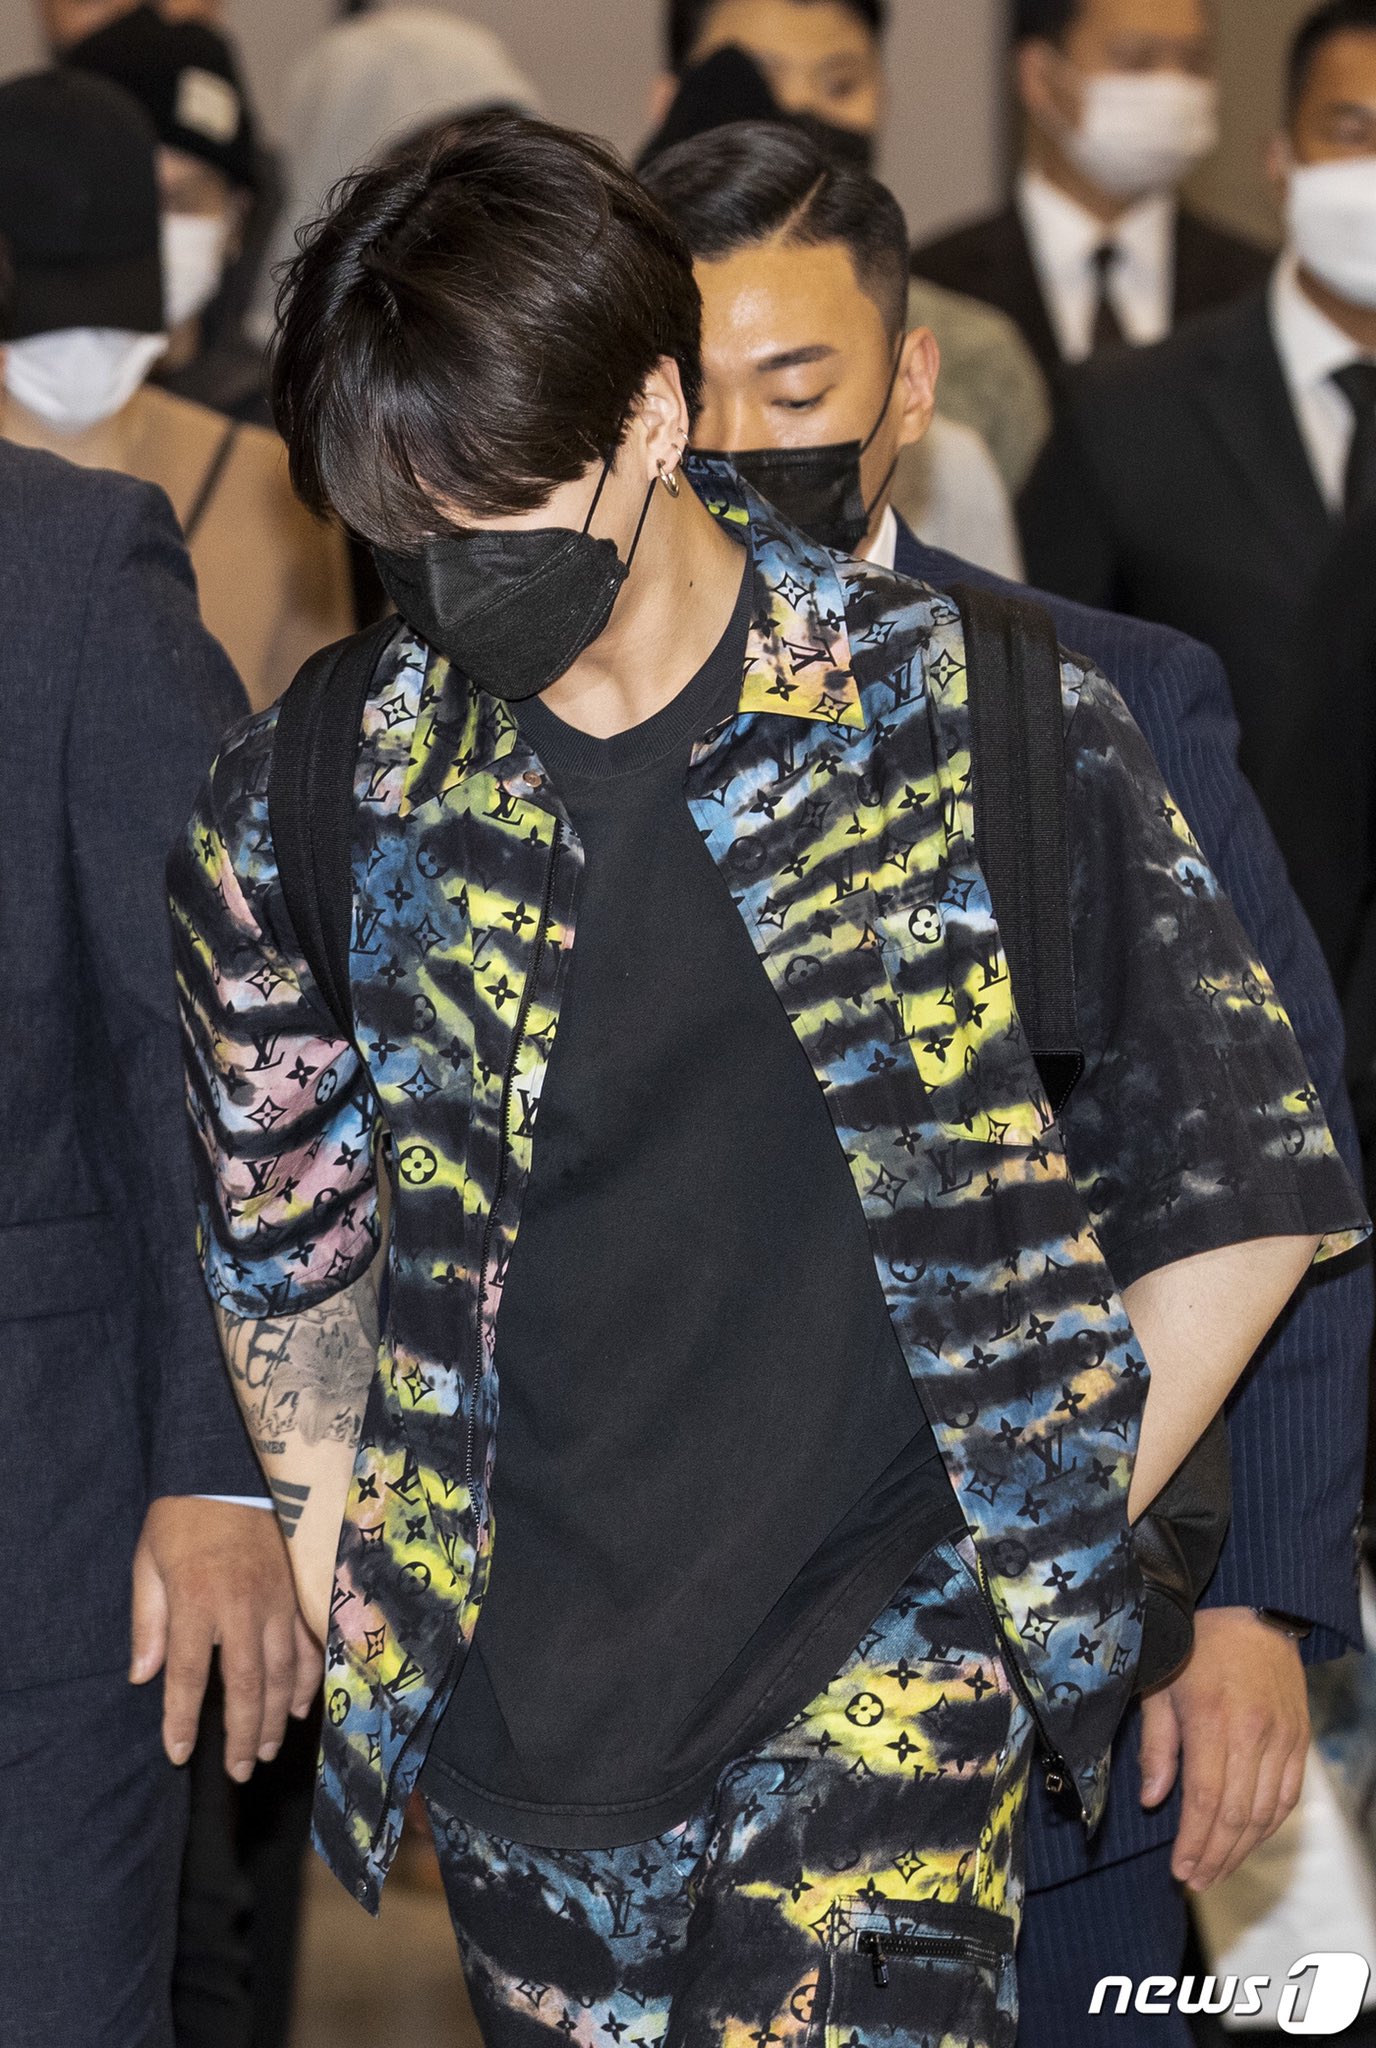 JK DAILYʲᵏ on X: [INFO] JUNGKOOK is wearing a Louis Vuitton